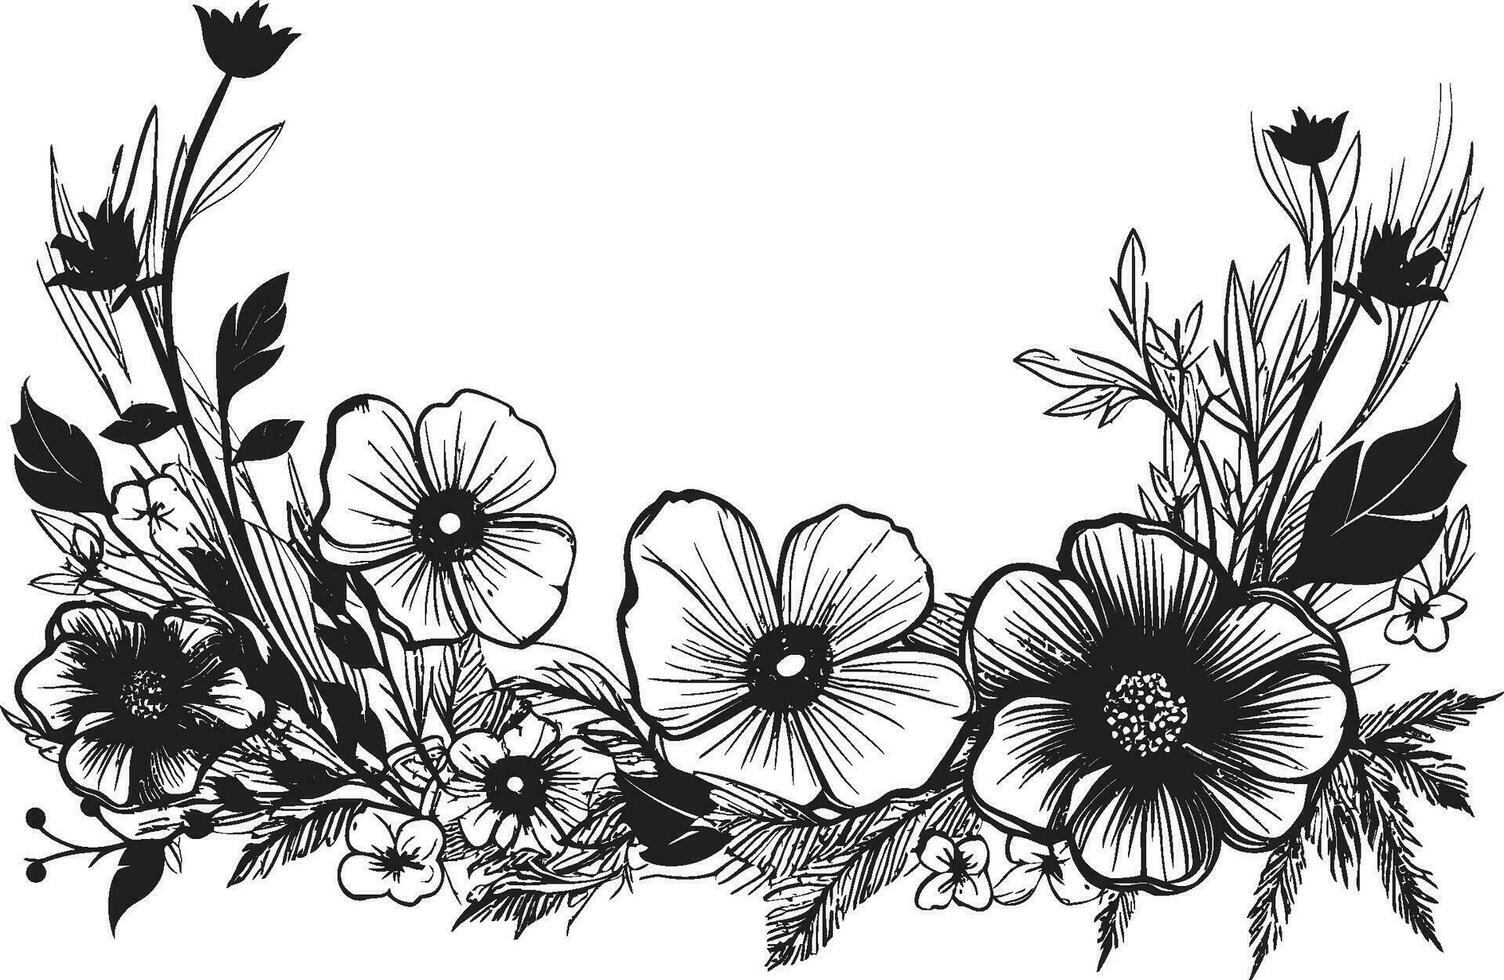 fesselnd Hand gezeichnet Komposition schwarz Vektor spielerisch Blumen- Design ikonisch Logo Element